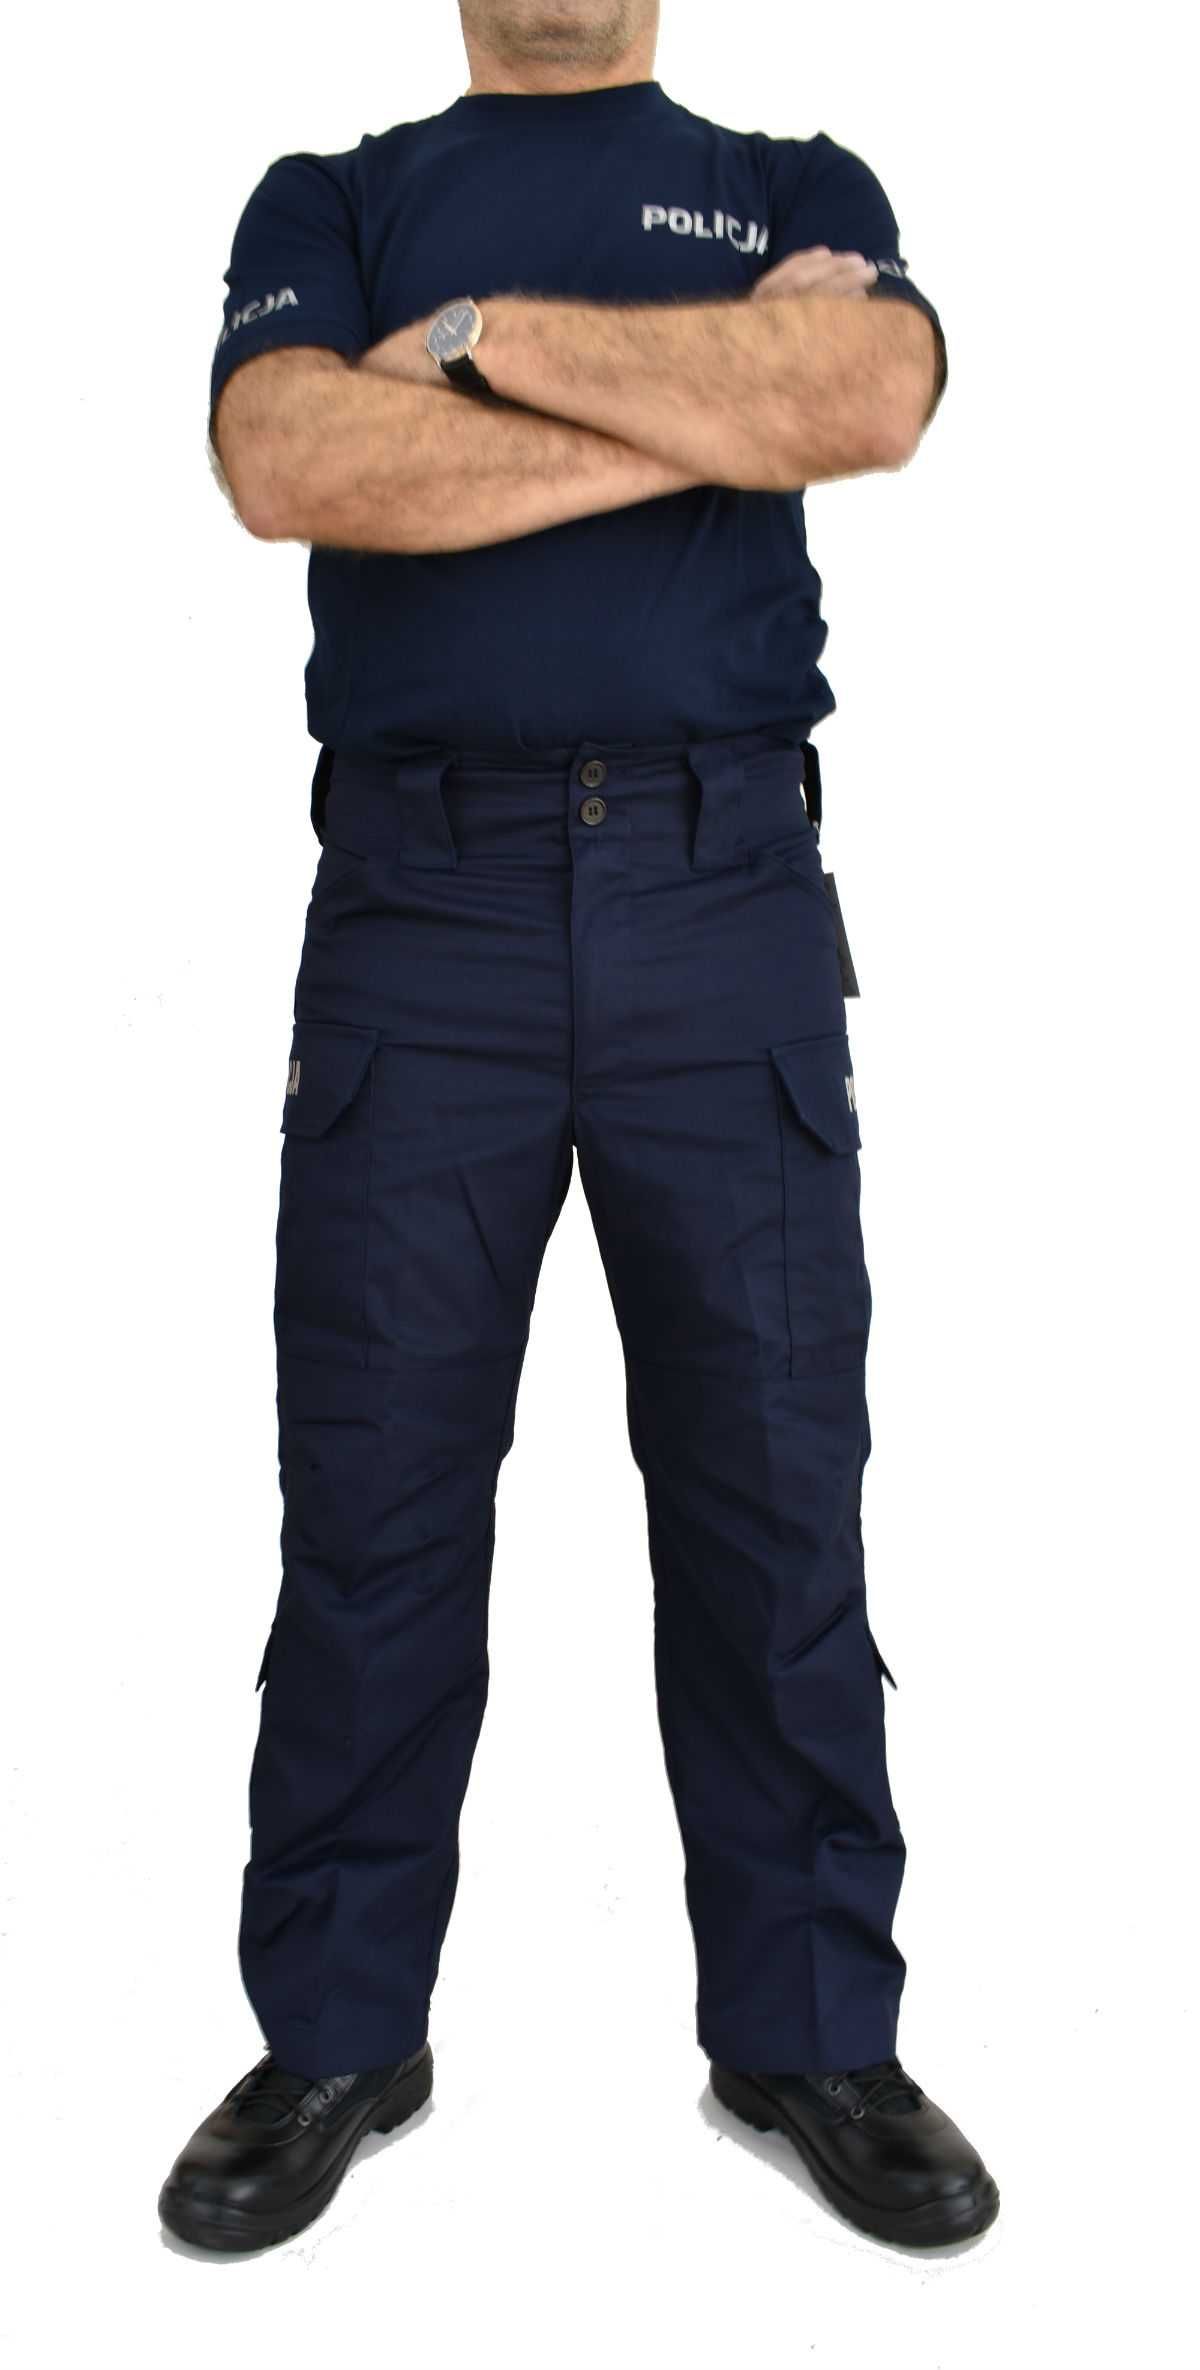 Spodnie do munduru policji nowe